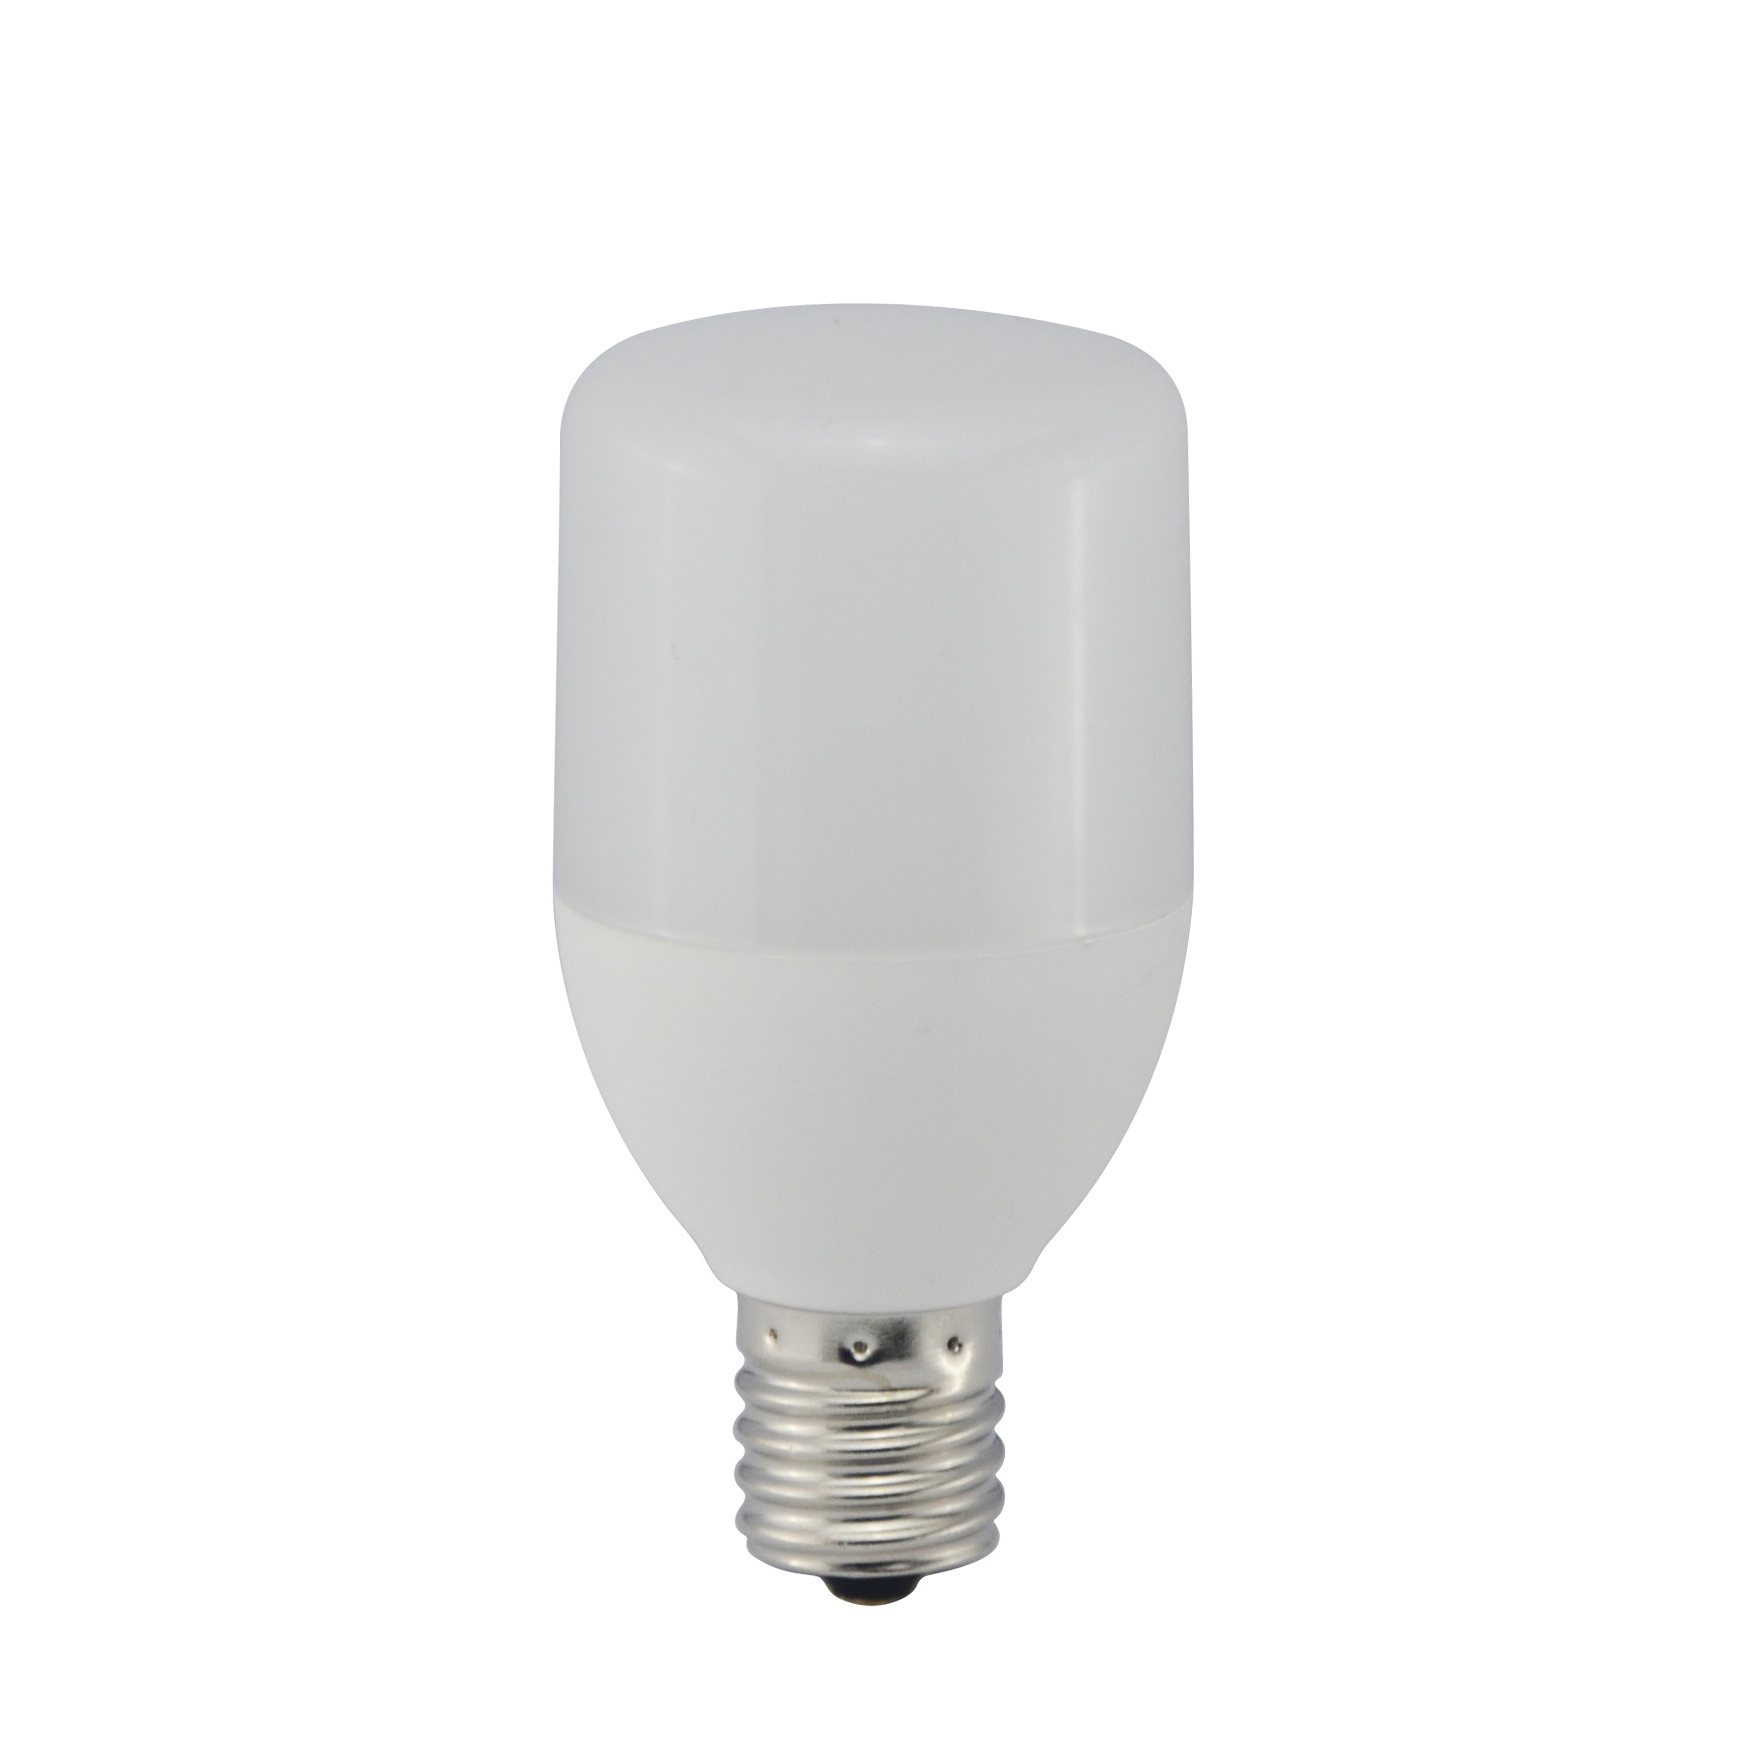 LED電球 T形 E17 40形相当 電球色 [品番]06-0299｜株式会社オーム電機